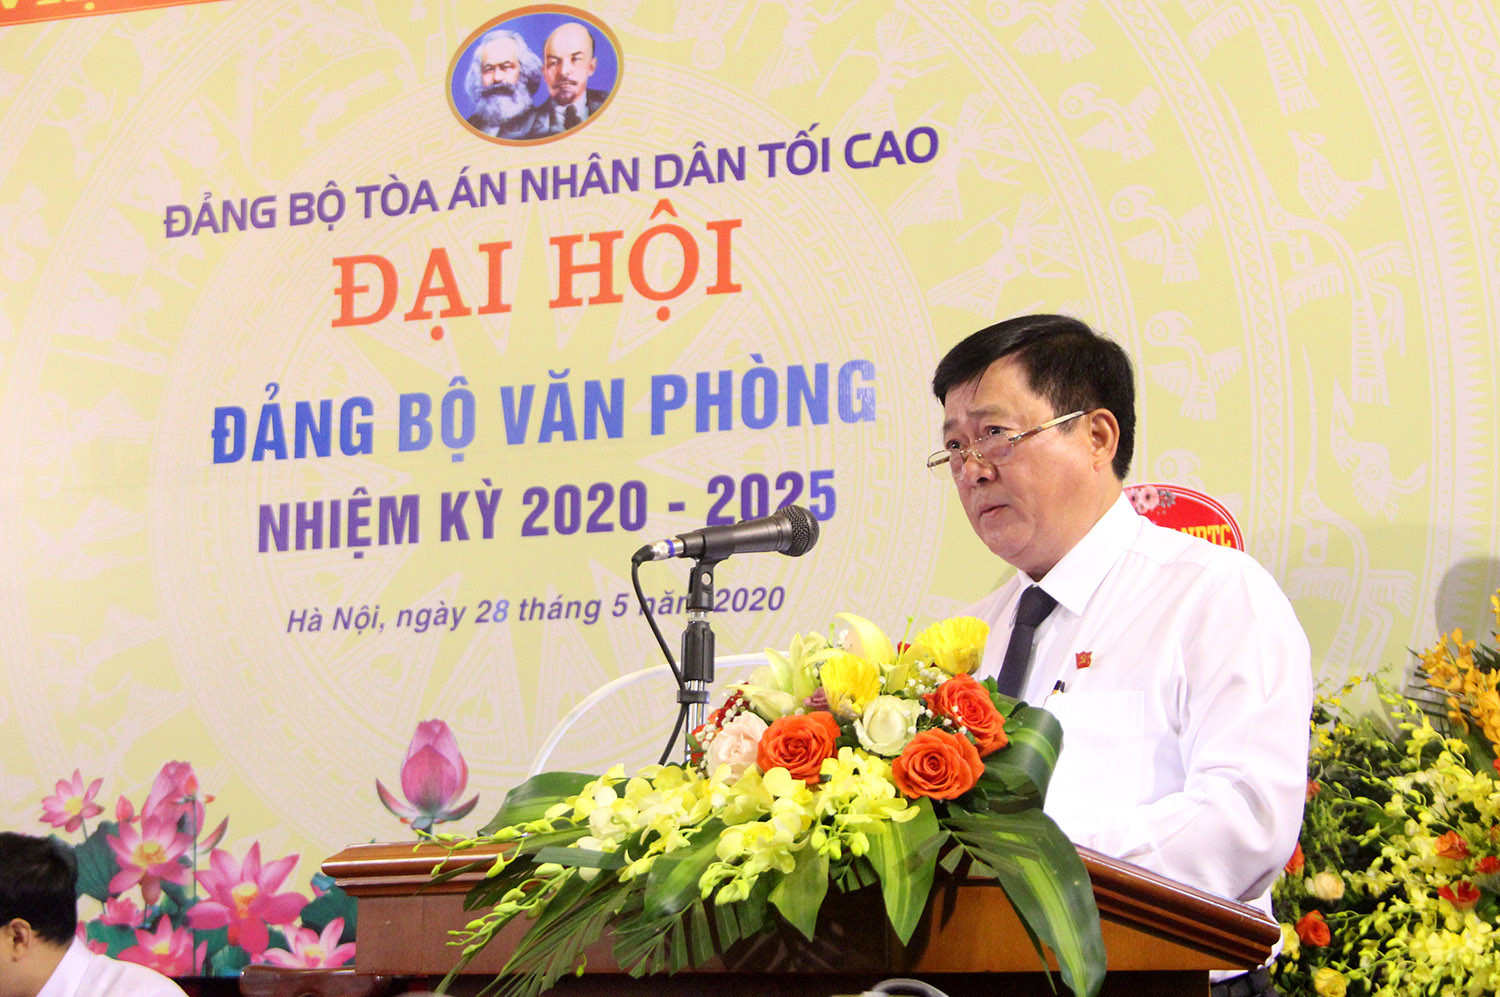 Đại hội Đảng bộ Văn phòng TANDTC nhiệm kỳ 2020 - 2025